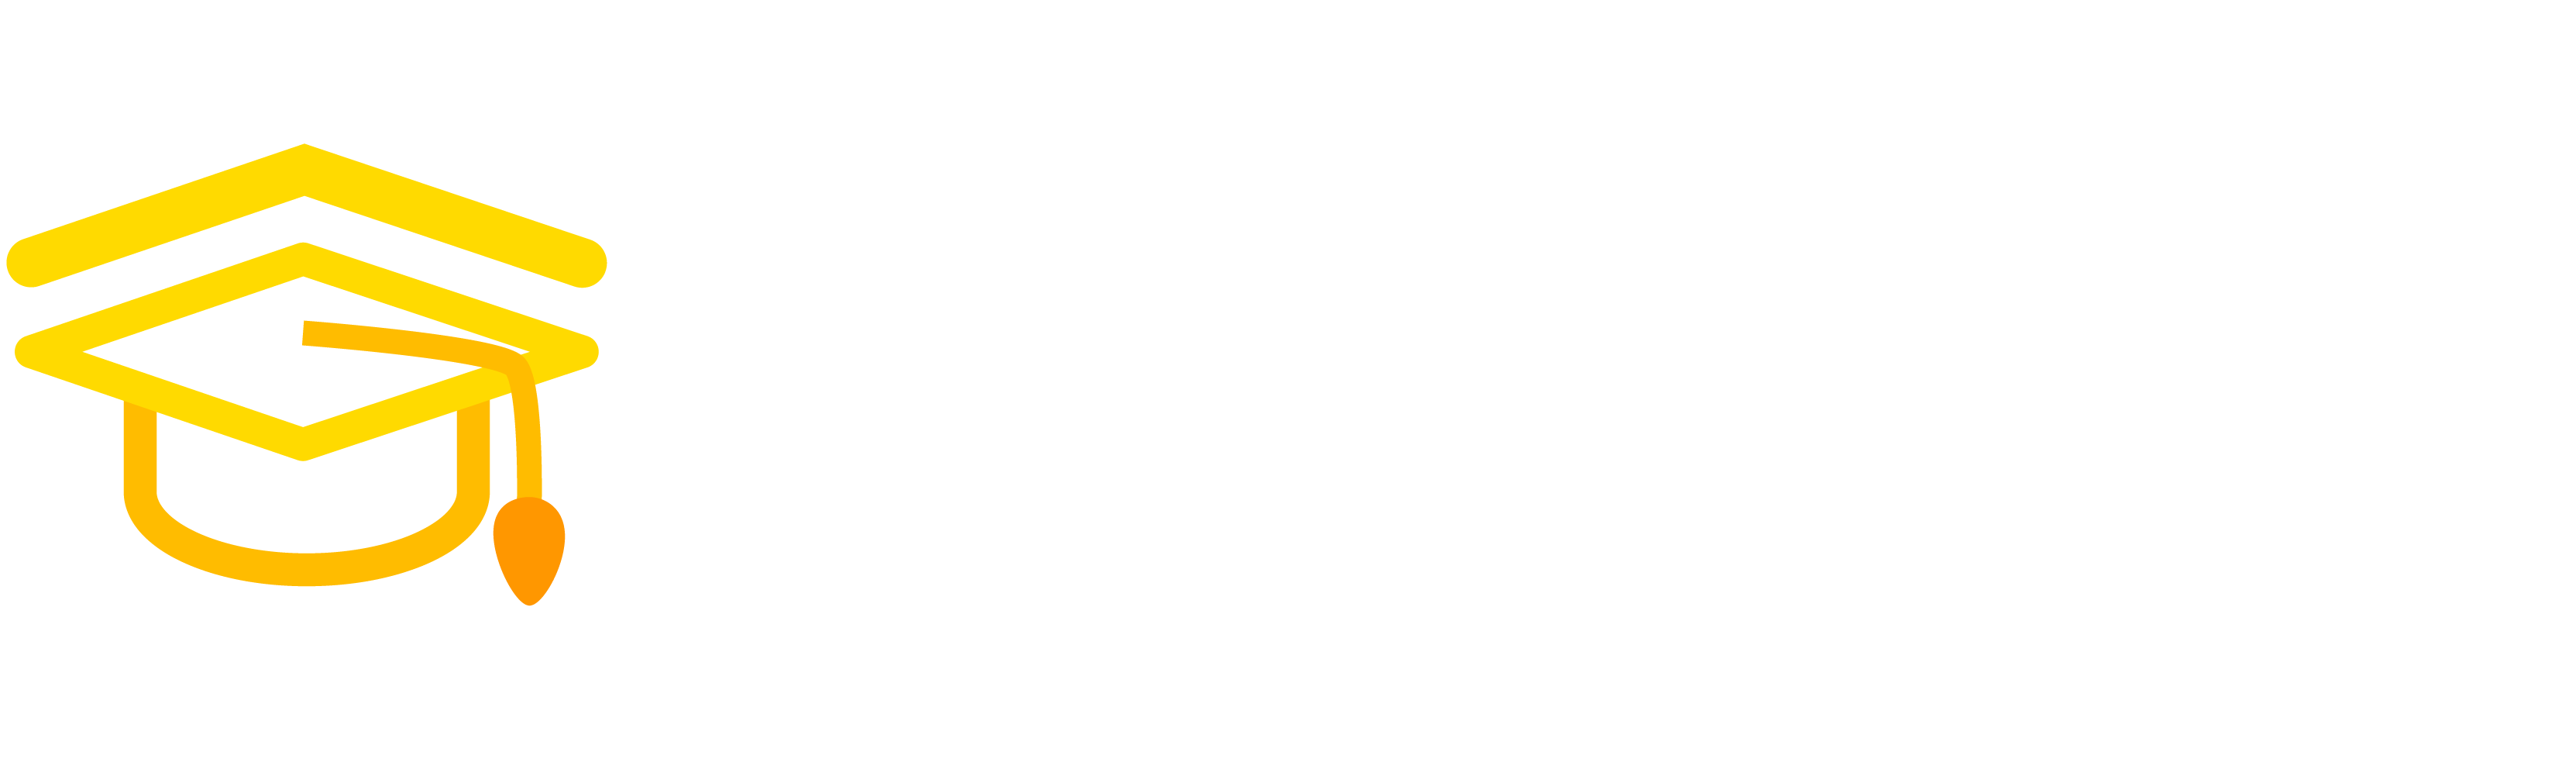 notespace logo